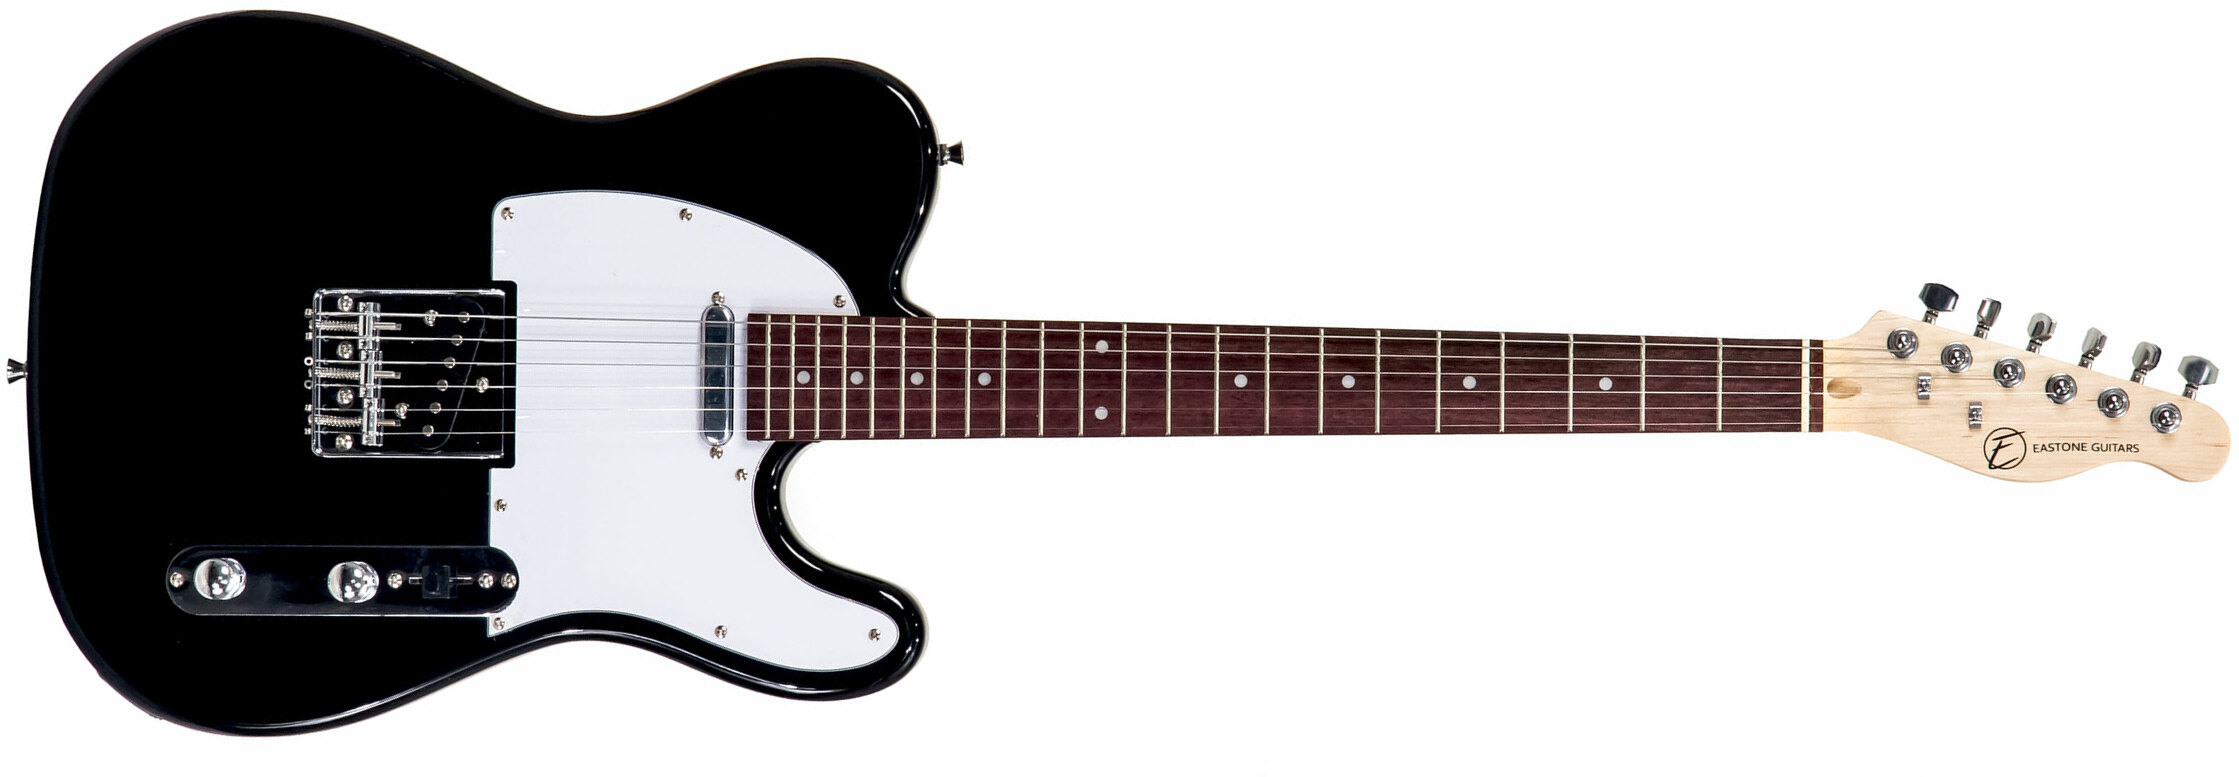 Eastone Tl70 Ss Ht Pur - Black - Guitare Électrique Forme Tel - Main picture